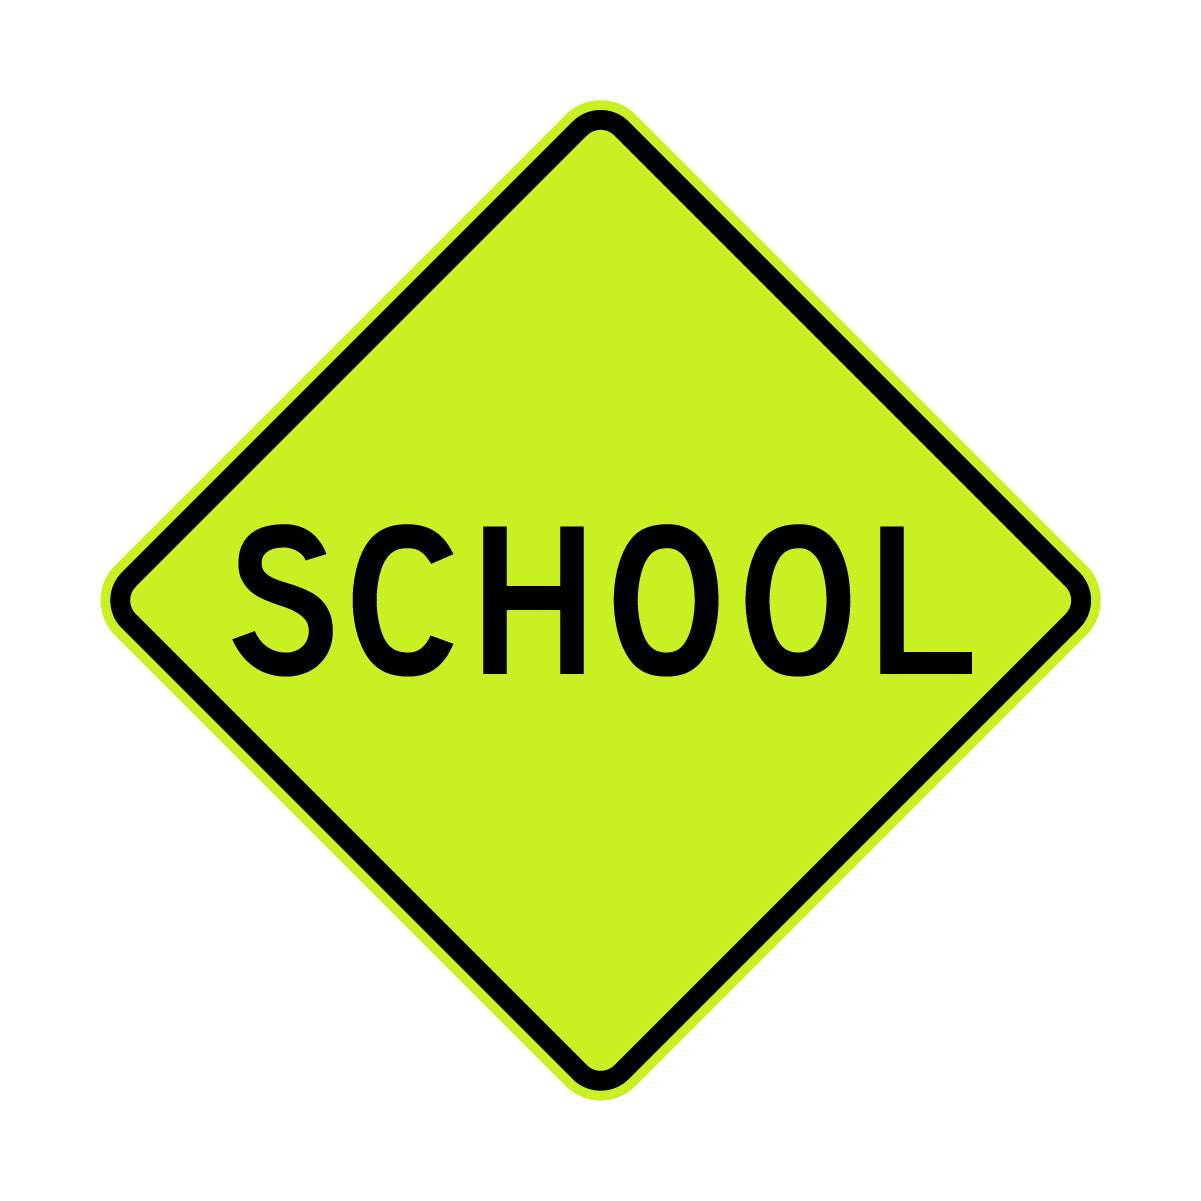 Warning: School Ahead Sign